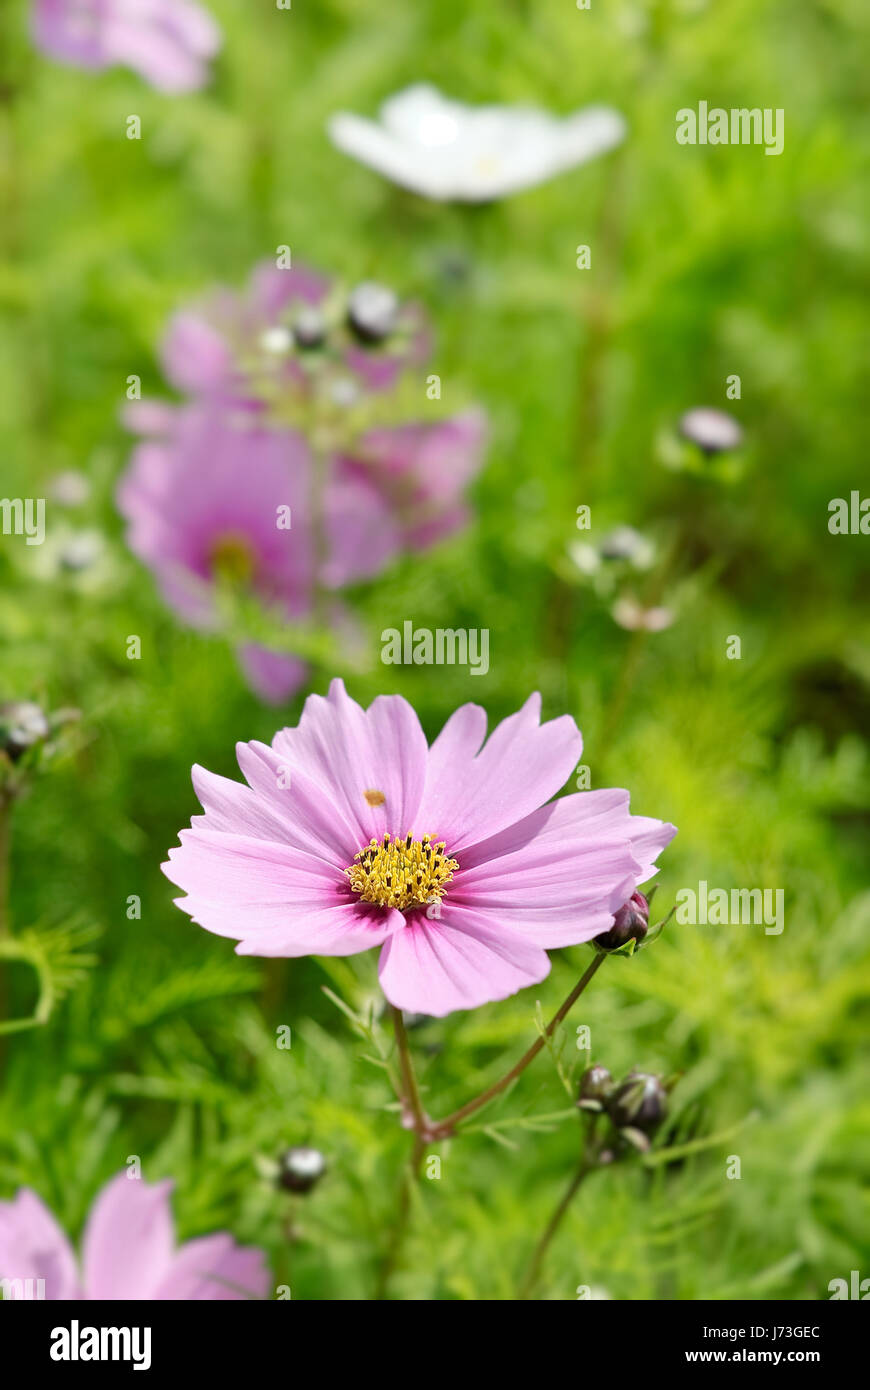 Jardin fleur plante flore champ outdoor dapper accostage assez sympa Banque D'Images